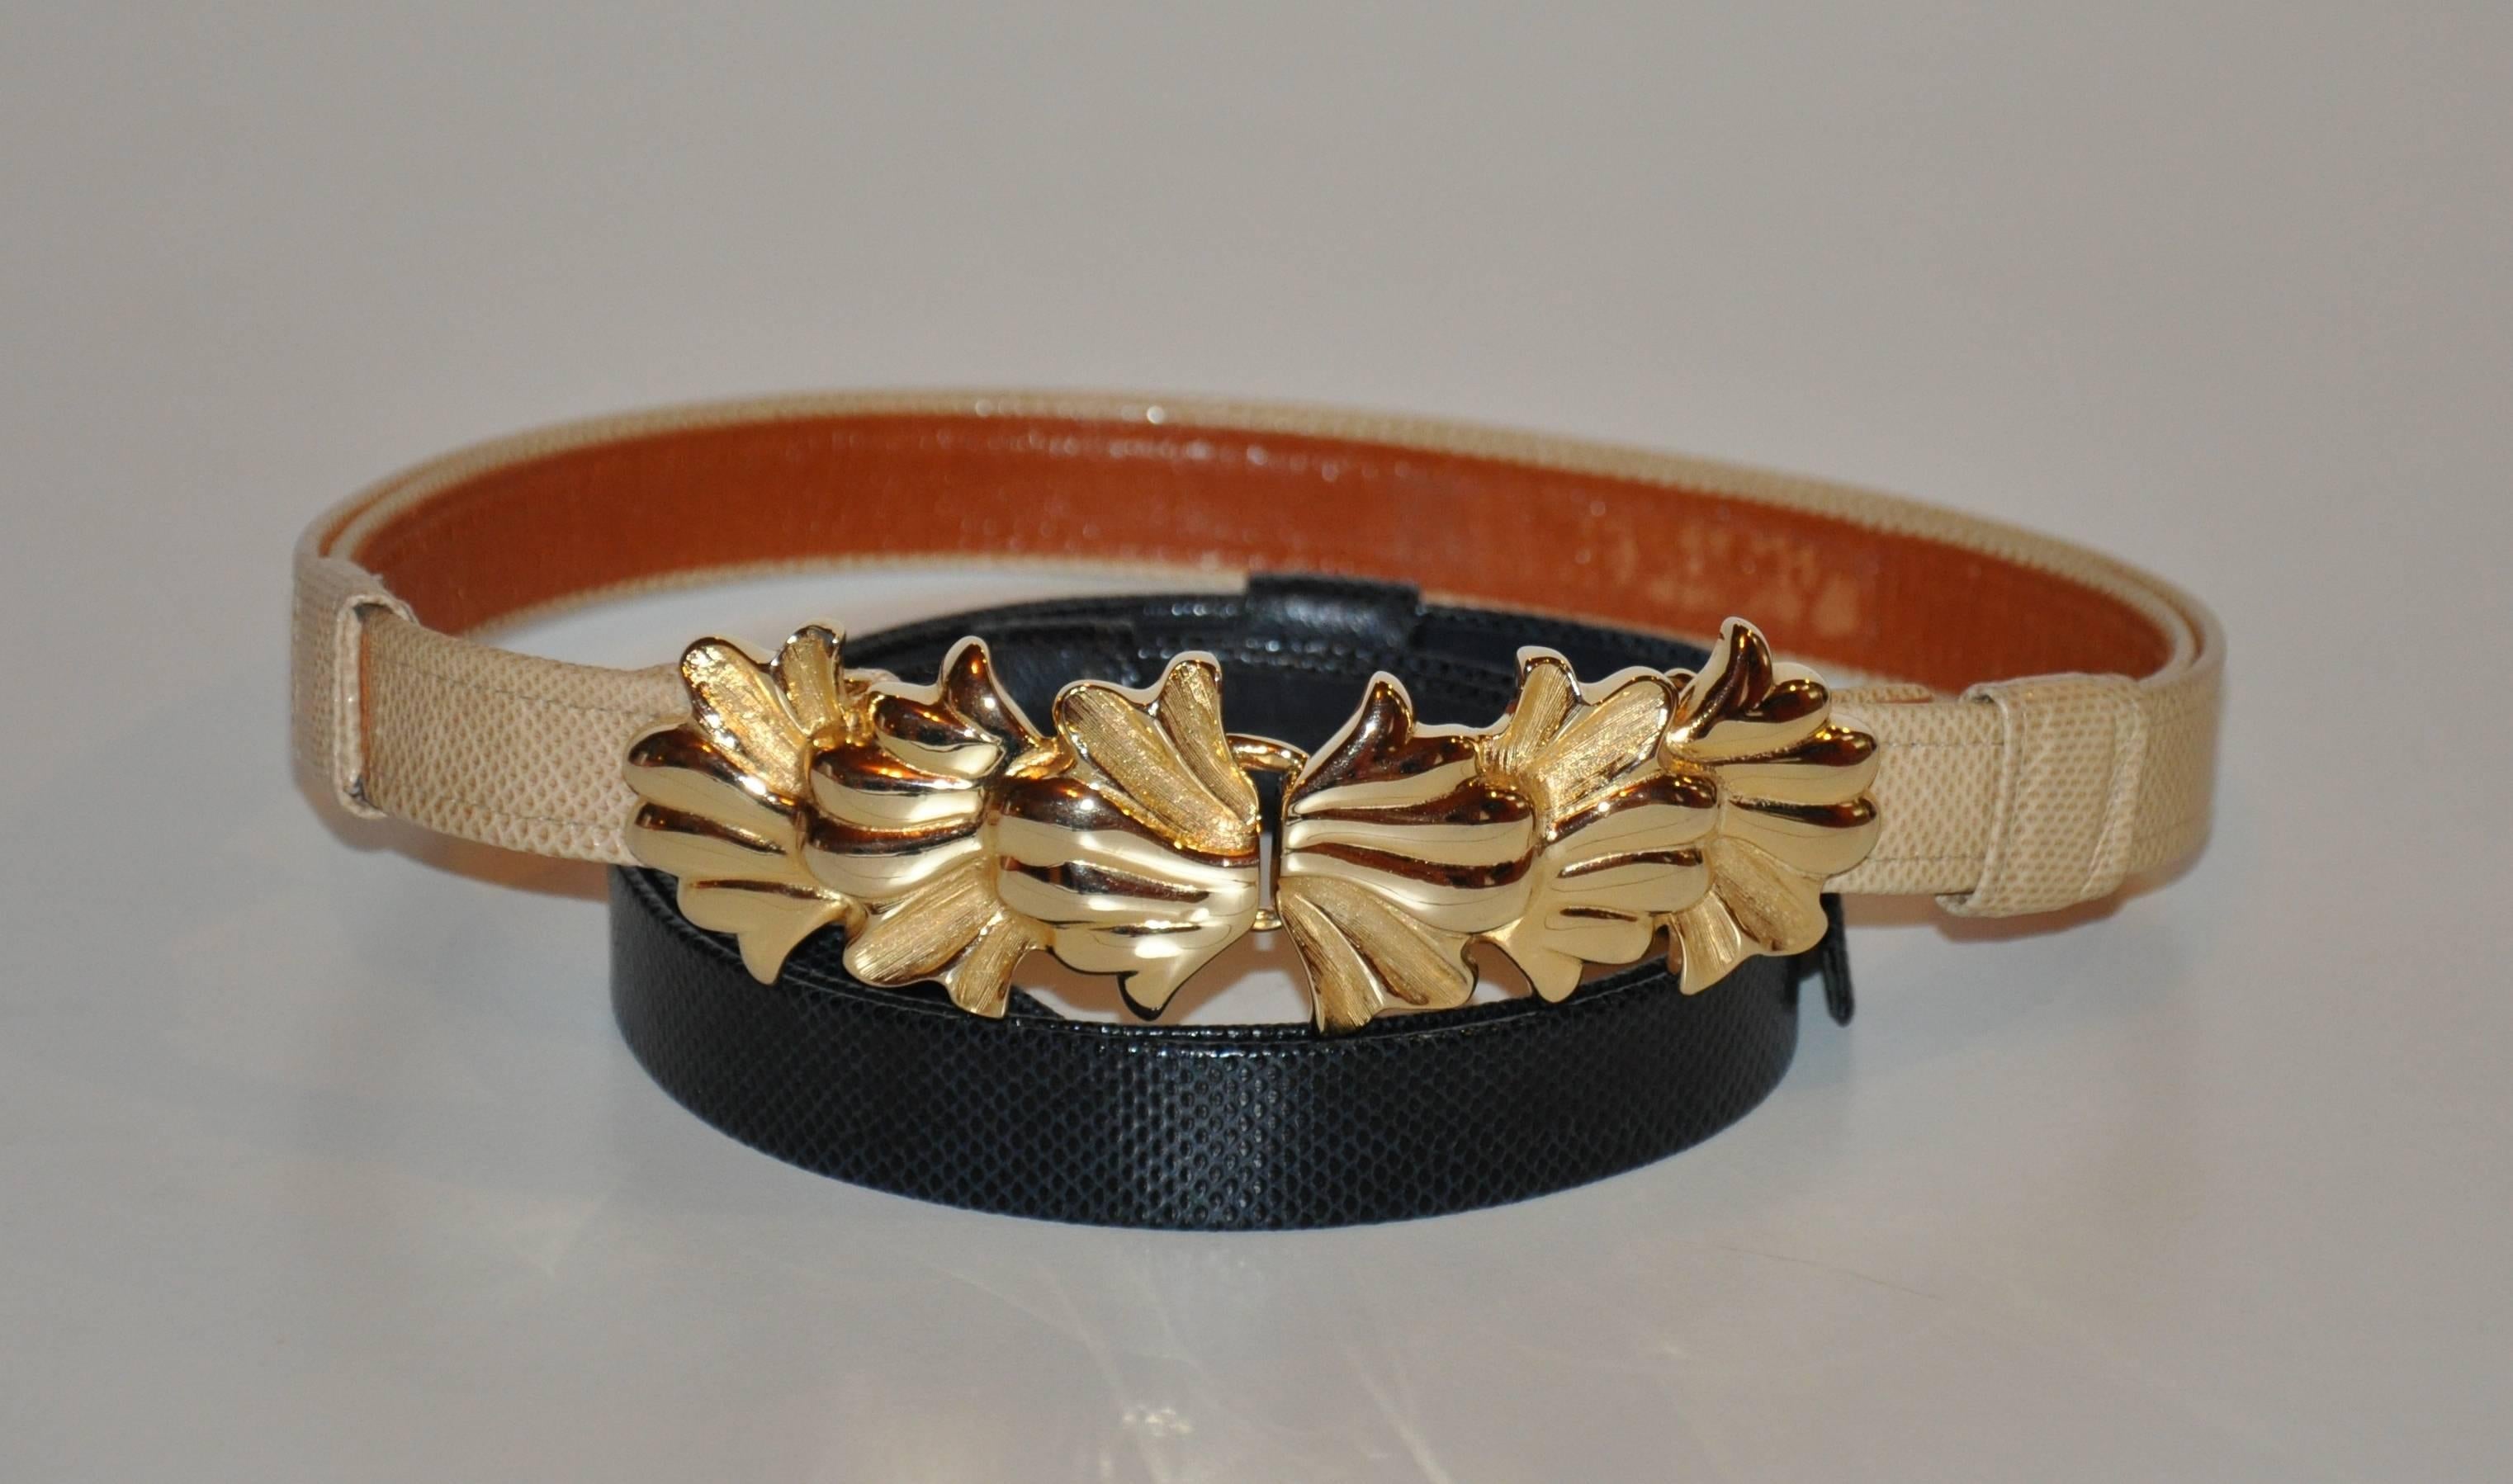             La boucle de ceinture Alexis Kirk en métal doré avec finition vermeil est livrée avec un choix de deux ceintures ajustables en cuir texturé, l'une en beige et l'autre en cuir beige. Et l'autre un cuir noir texturé doublé de cuir noir.